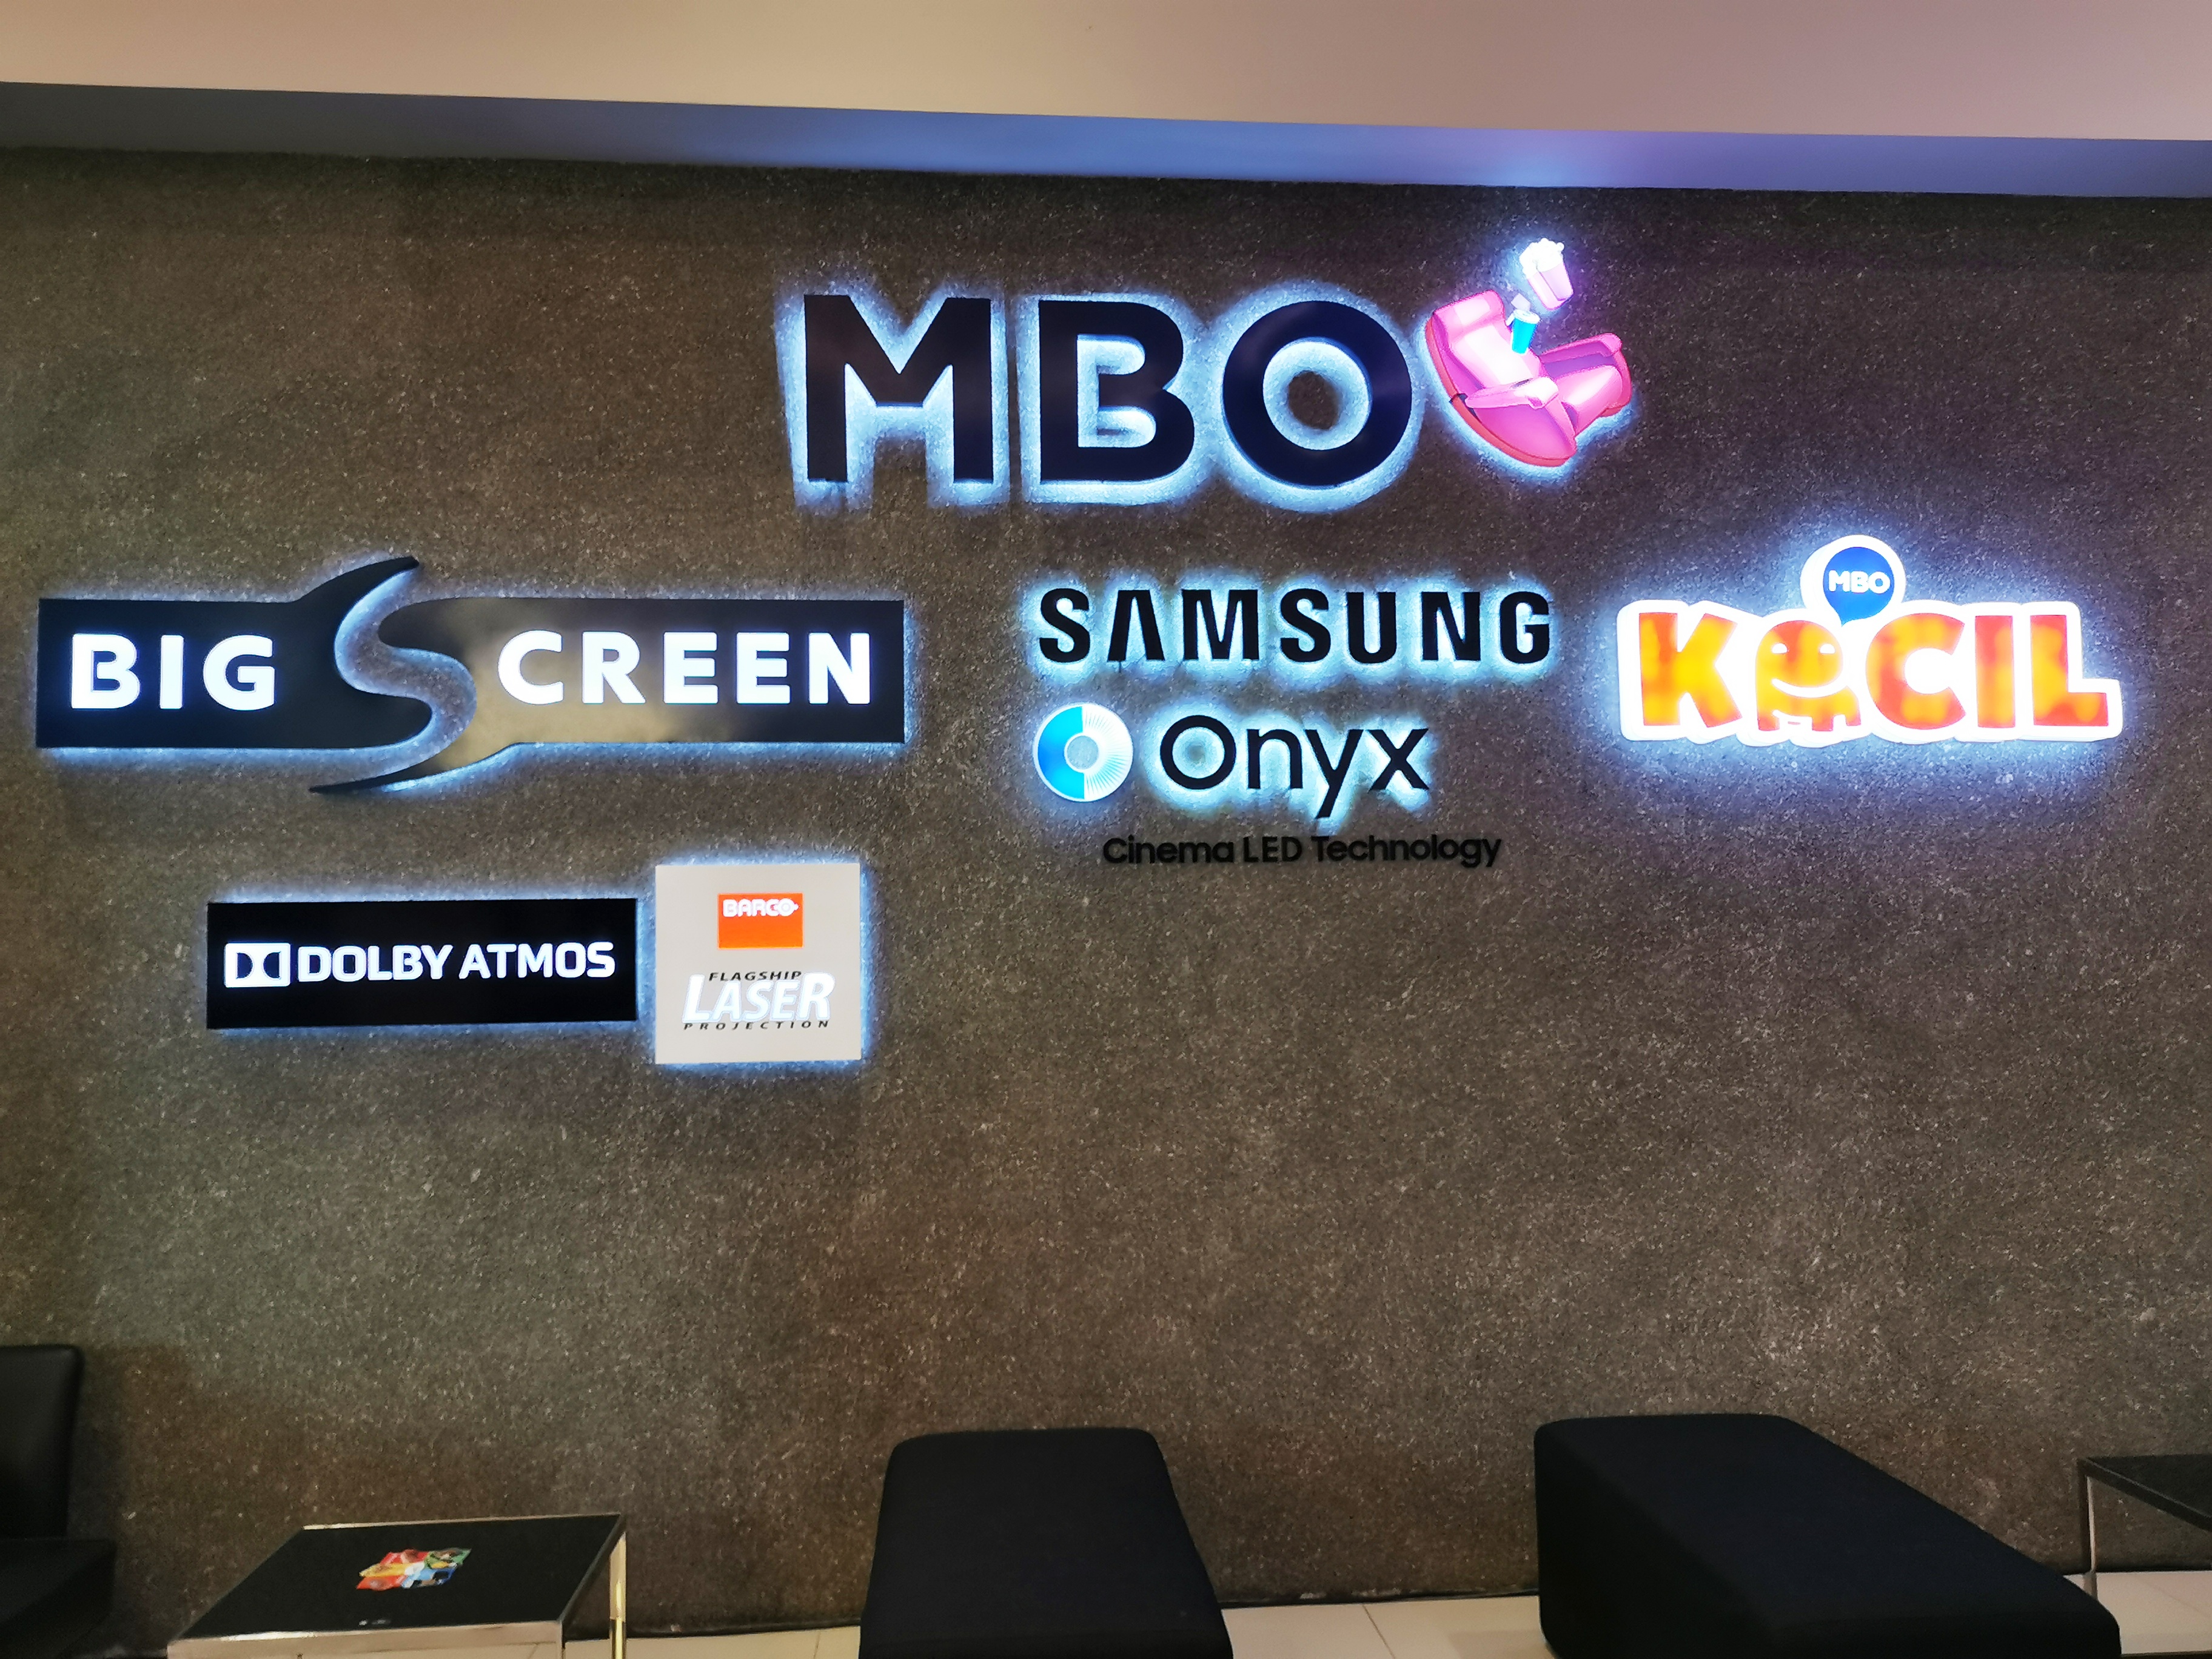 目前Atria Mall的MBO影院除了新引进的三星Onyx之外，还有Kecil、Bigscreen、杜比环绕Atmos以及镭射投影等不同设施和影音系统的影厅。-杨琇媖摄-